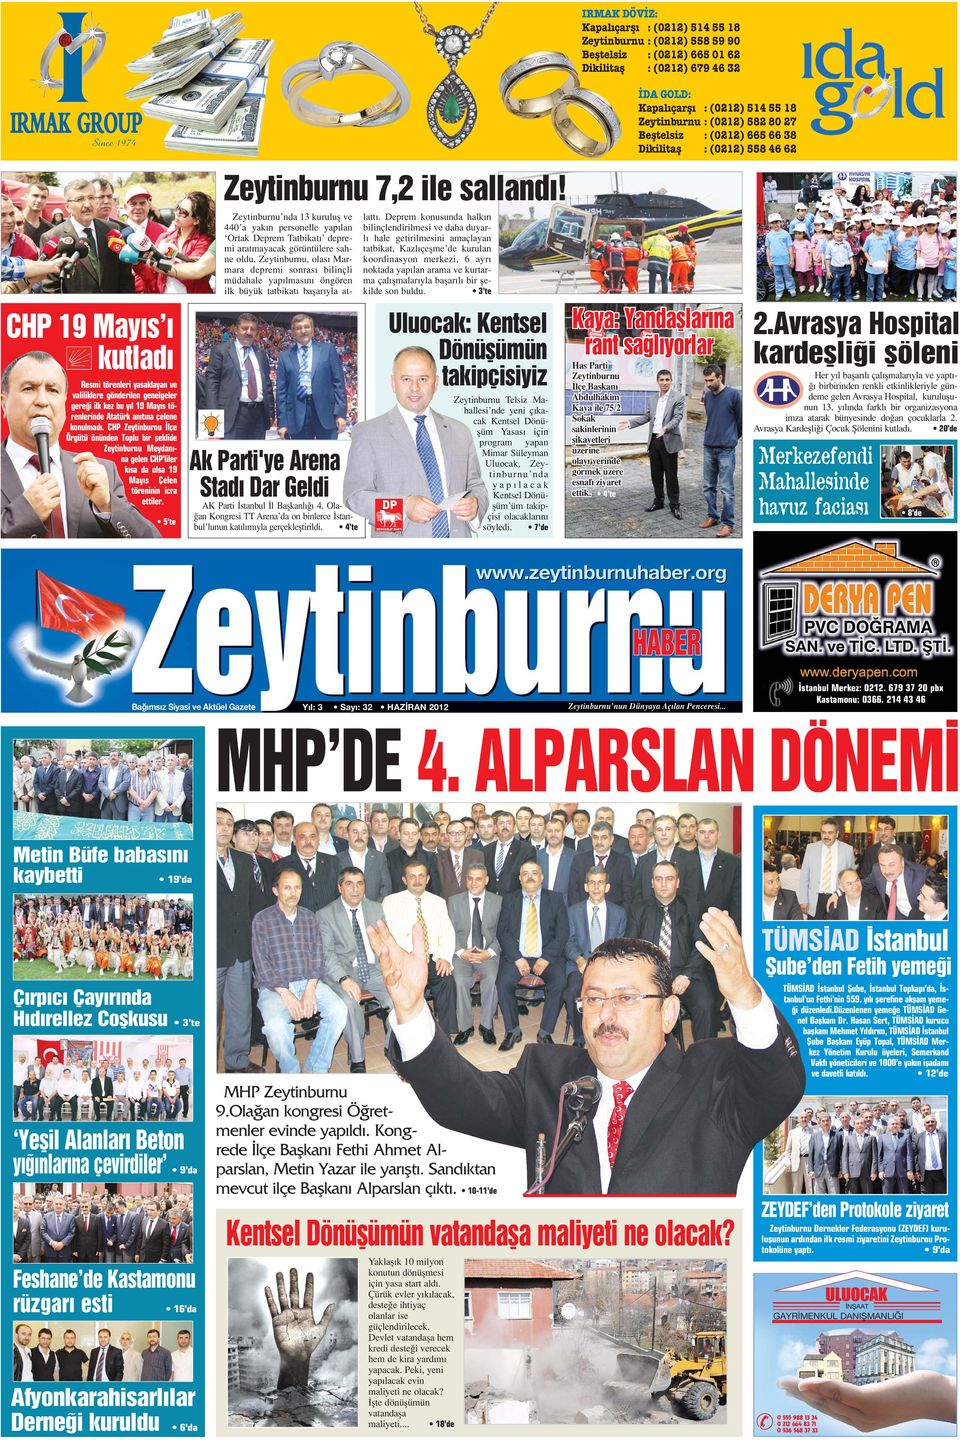 CHP Zeytinburnu lçe Örgütü önünden Toplu bir fleklide Zeytinburnu Meydan - na gelen CHP liler k sa da olsa 19 May s Çelen töreninin icra ettiler. 5 te Zeytinburnu 7,2 ile salland!